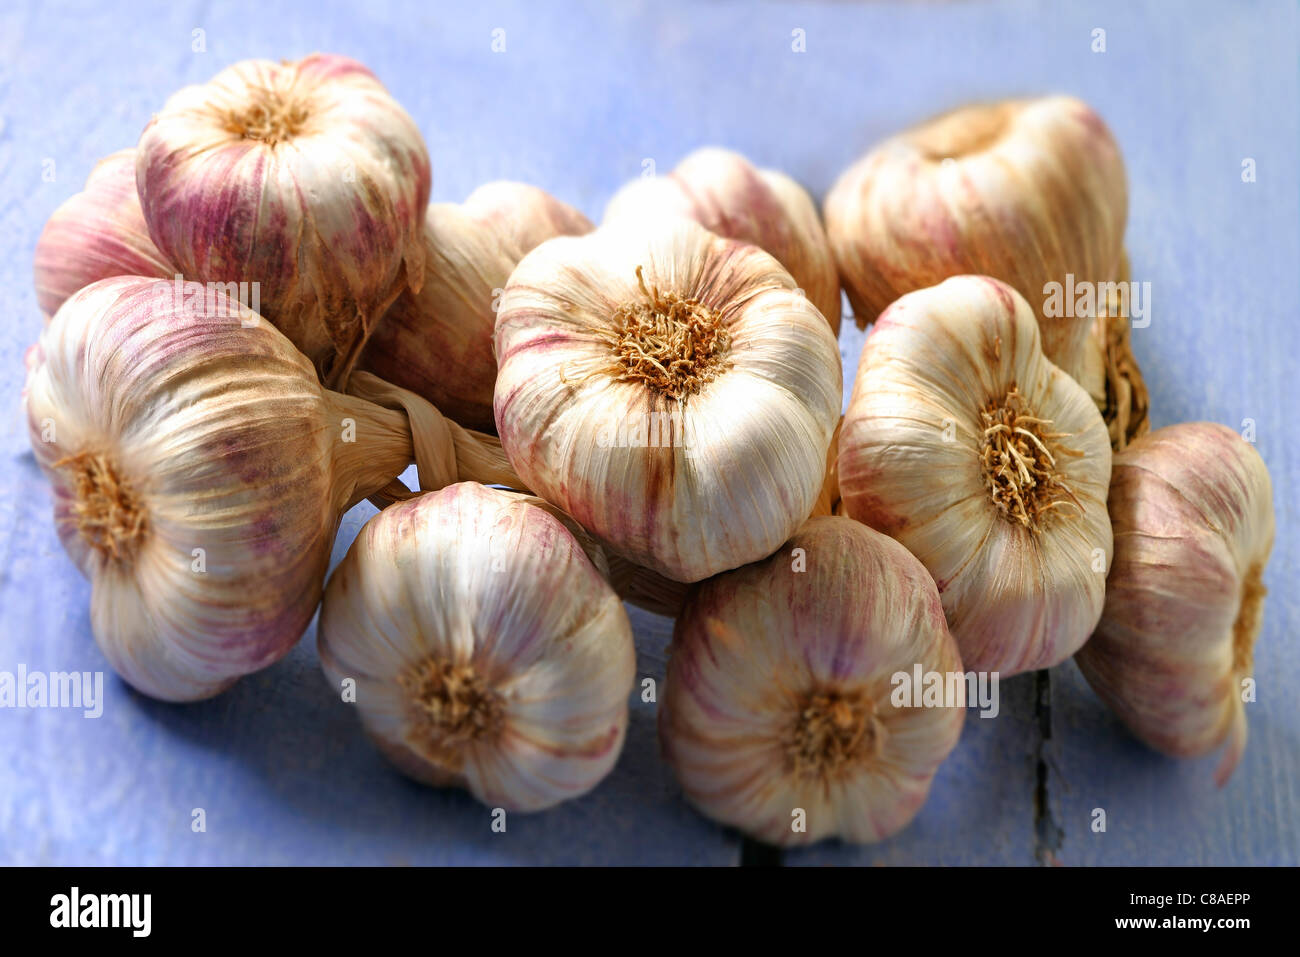 Braided garlic Stock Photo